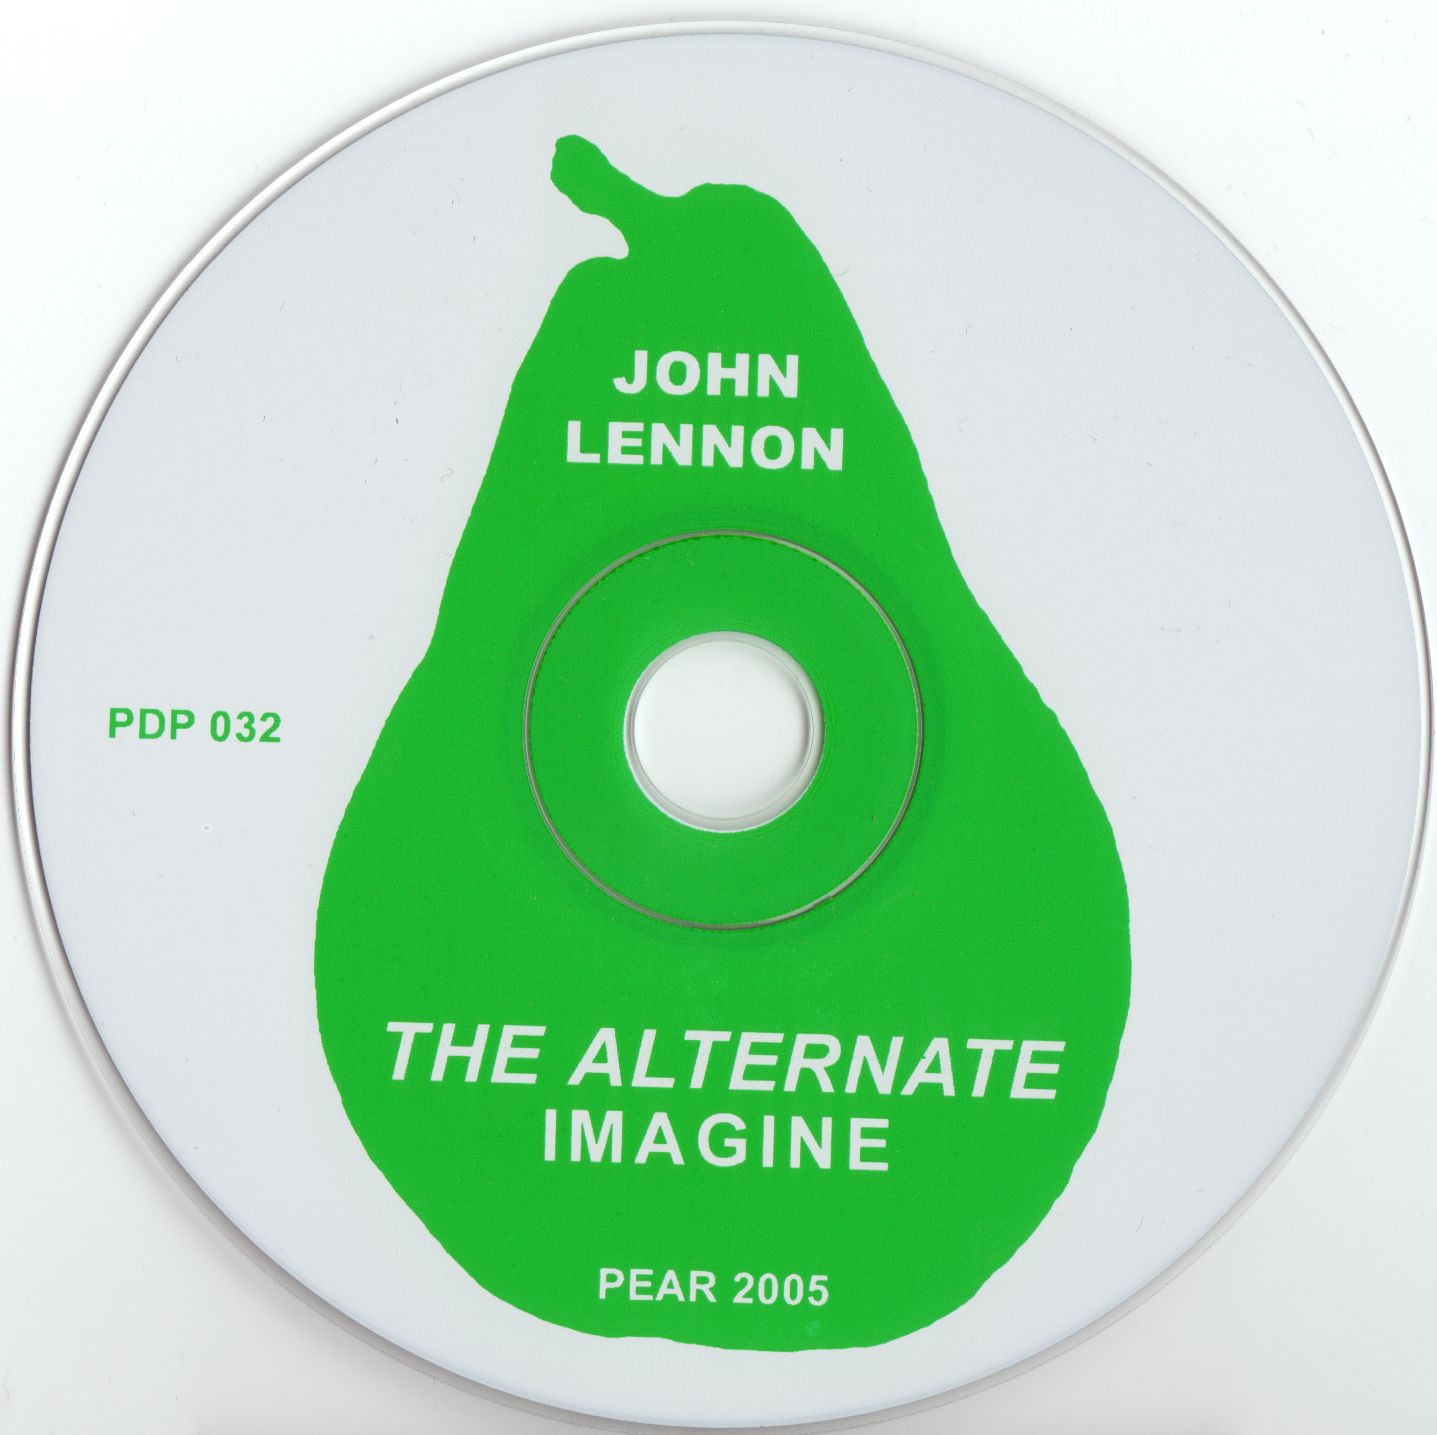 JohnLennon-TheAlternateImagine (6).jpg